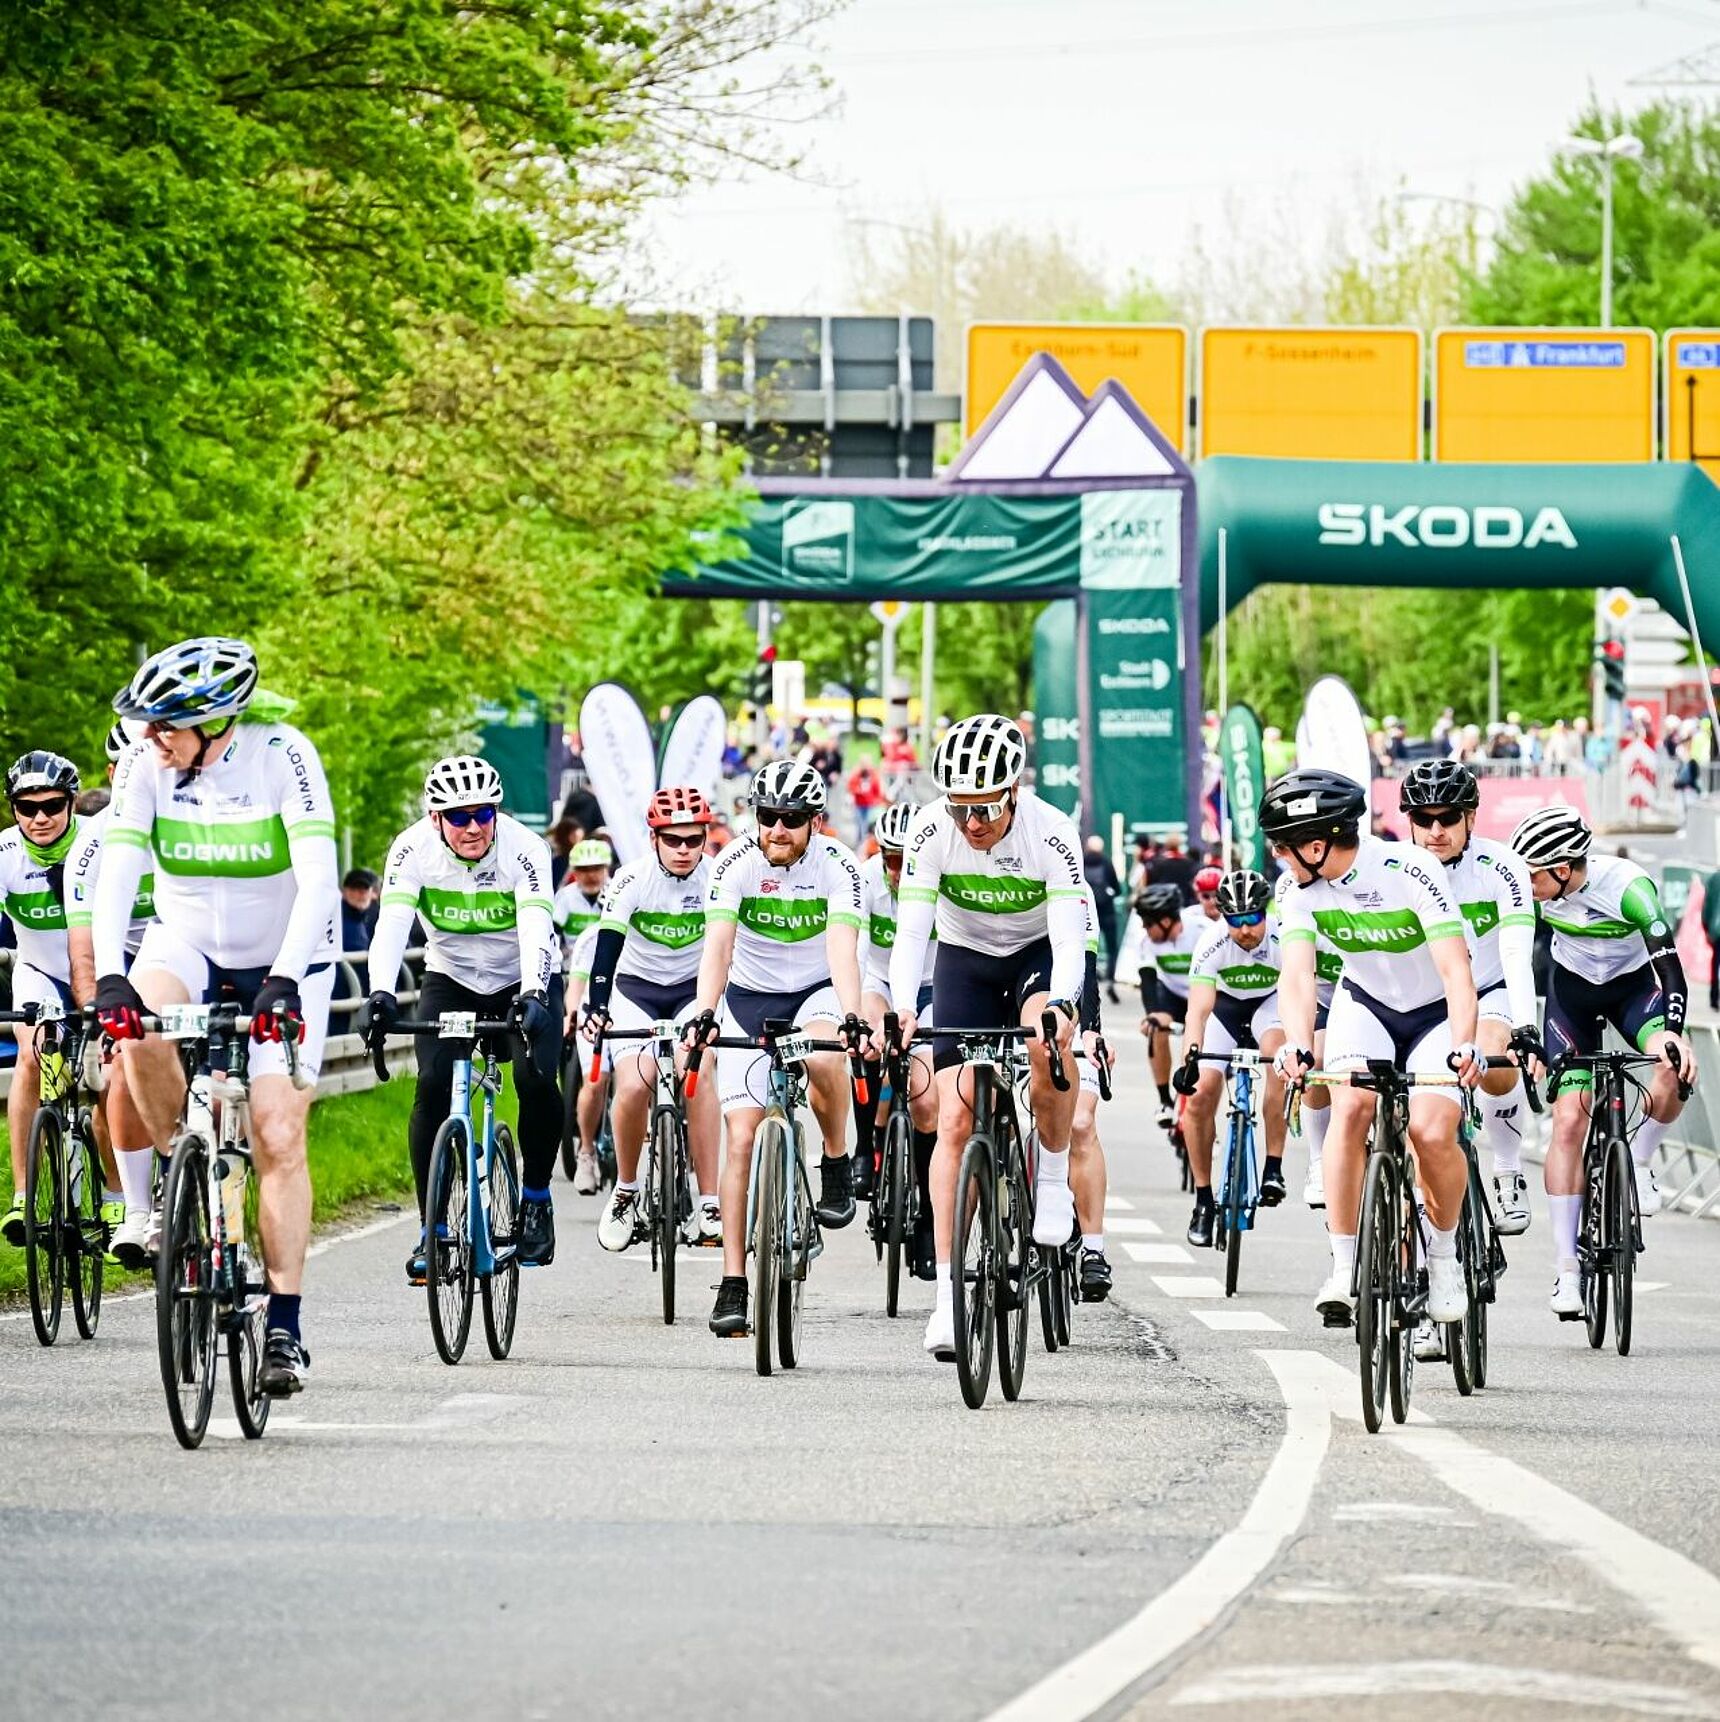 Logwin Team am Start der Skoda Velotour beim Radklassiker Eschborn-Frankfurt